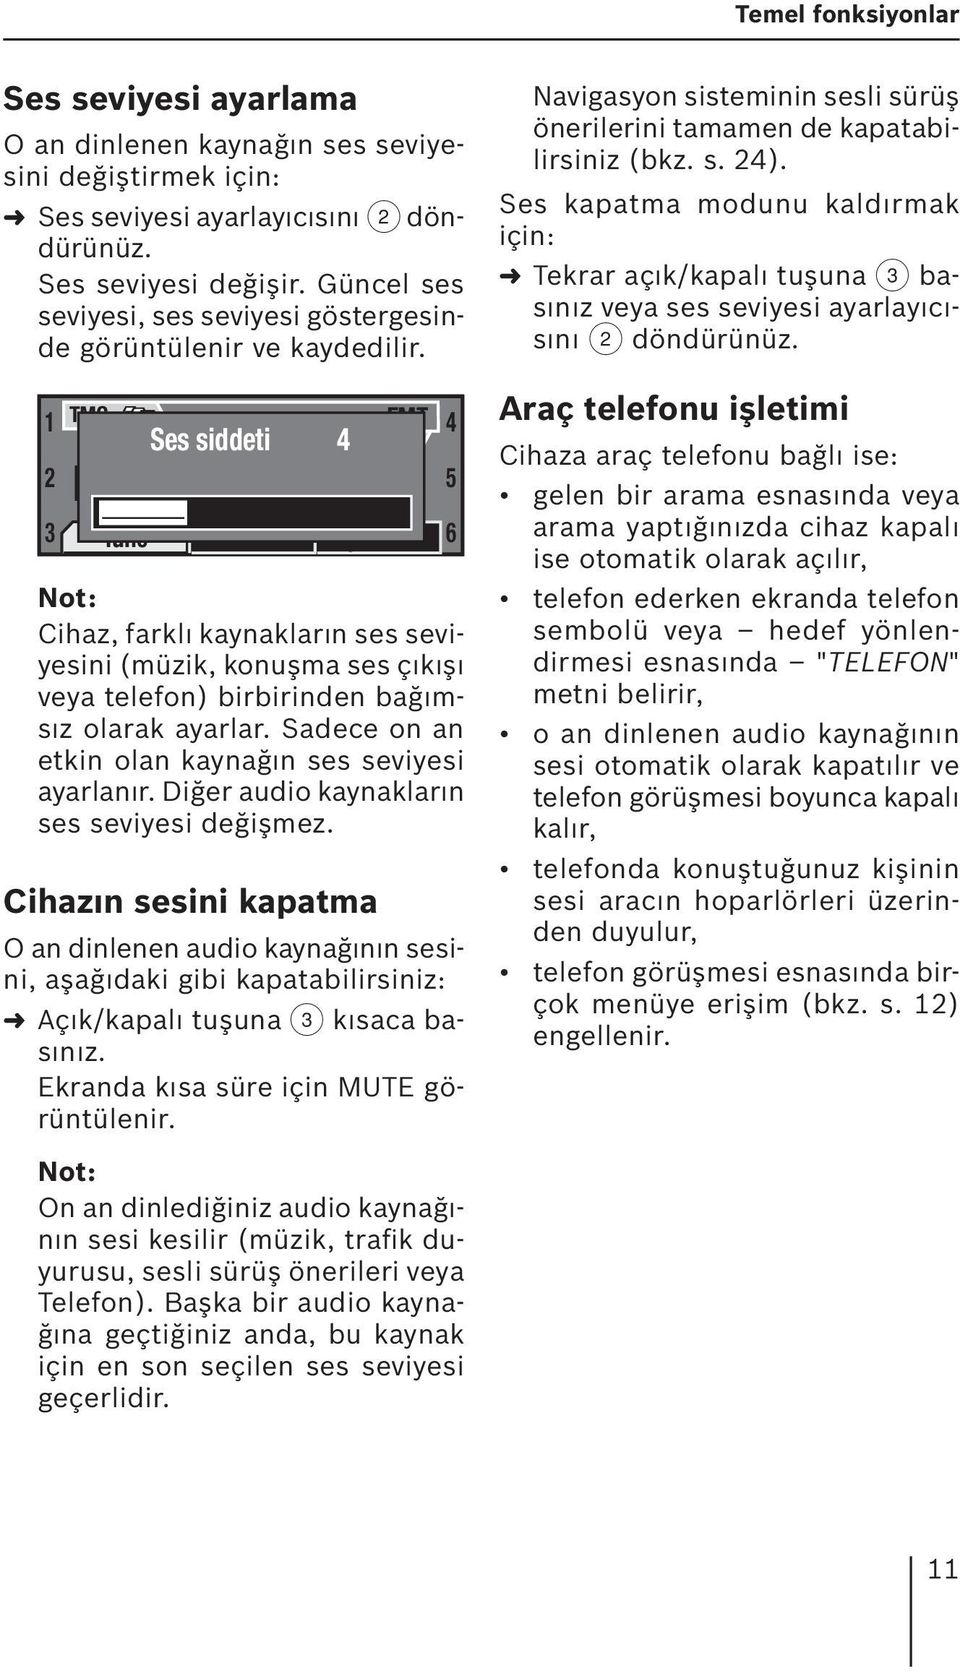 1 TMC 2 3 NDR 2 Tune Ses siddeti 16:13 4 Band Cihaz, farklı kaynakların ses seviyesini (müzik, konuşma ses çıkışı veya telefon) birbirinden bağımsız olarak ayarlar.